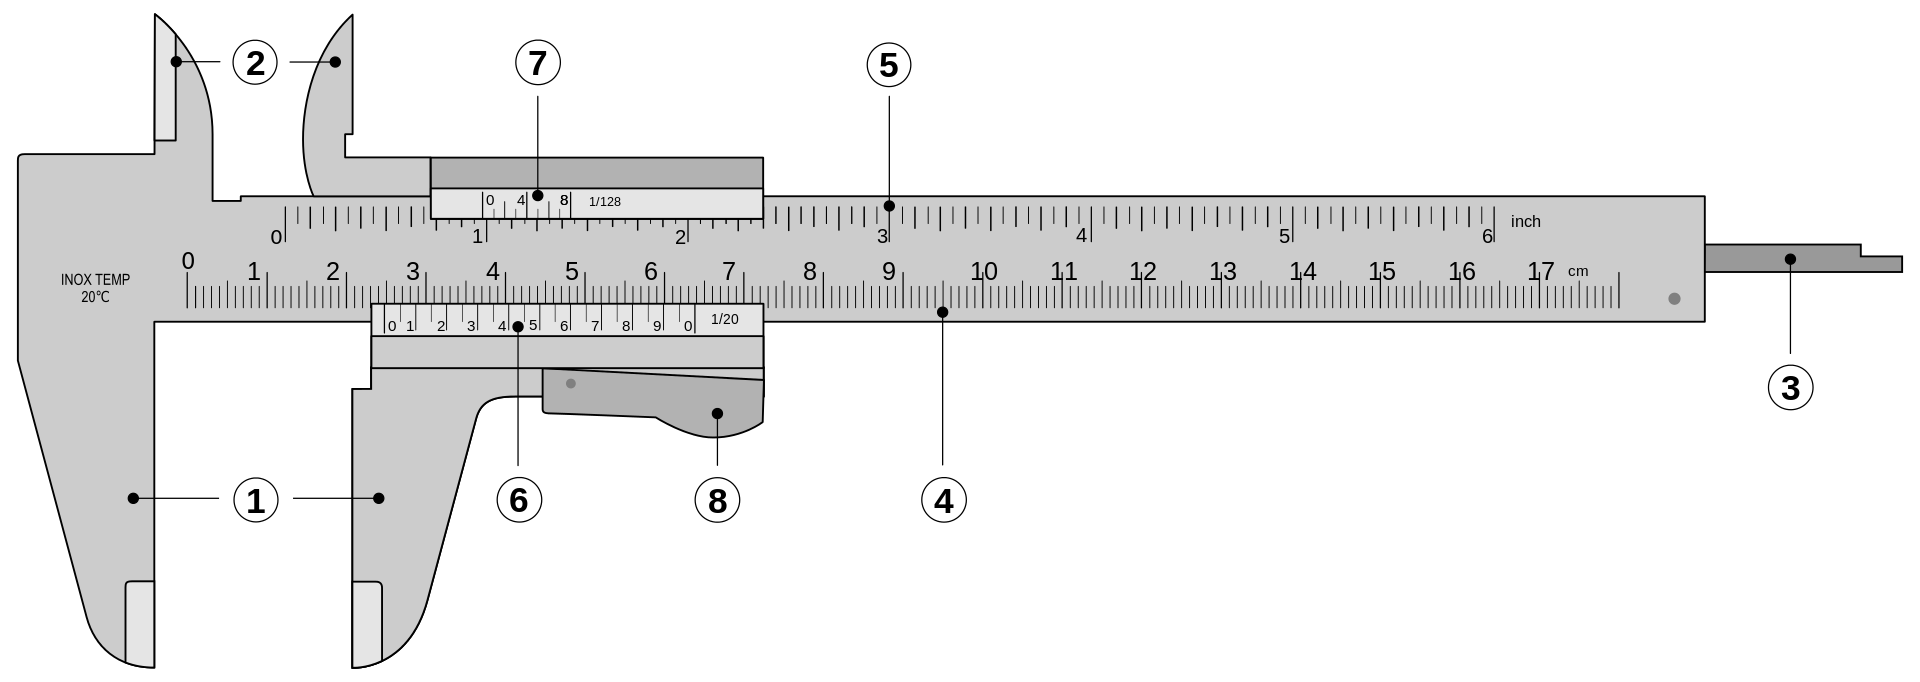 Parts of a caliper